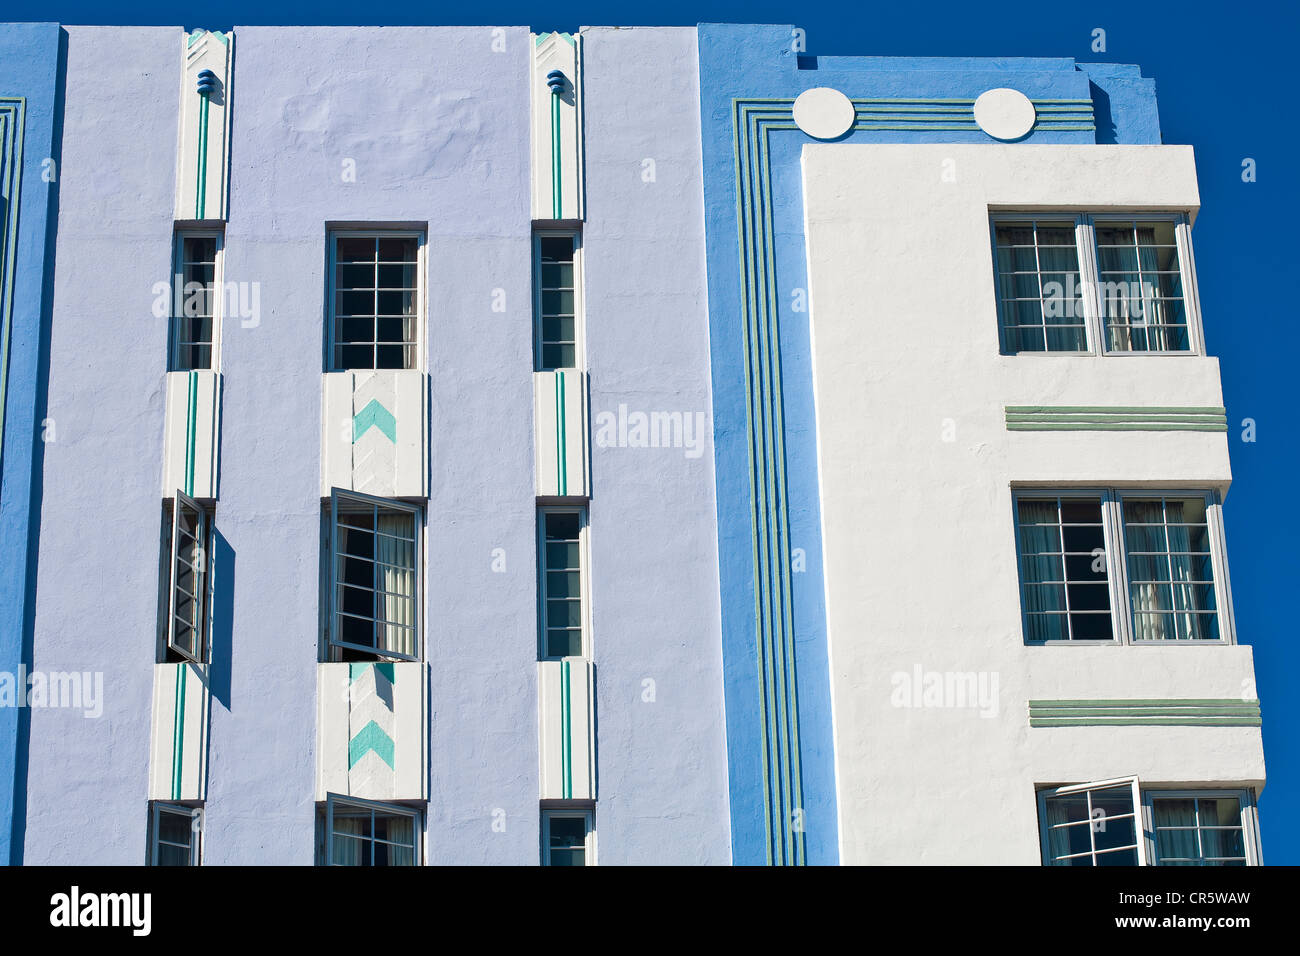 United States, Florida, Miami Beach, South Beach, le quartier Art déco, Ocean Drive, l'hôtel Park Central construit en 1937 par l'architecte Banque D'Images